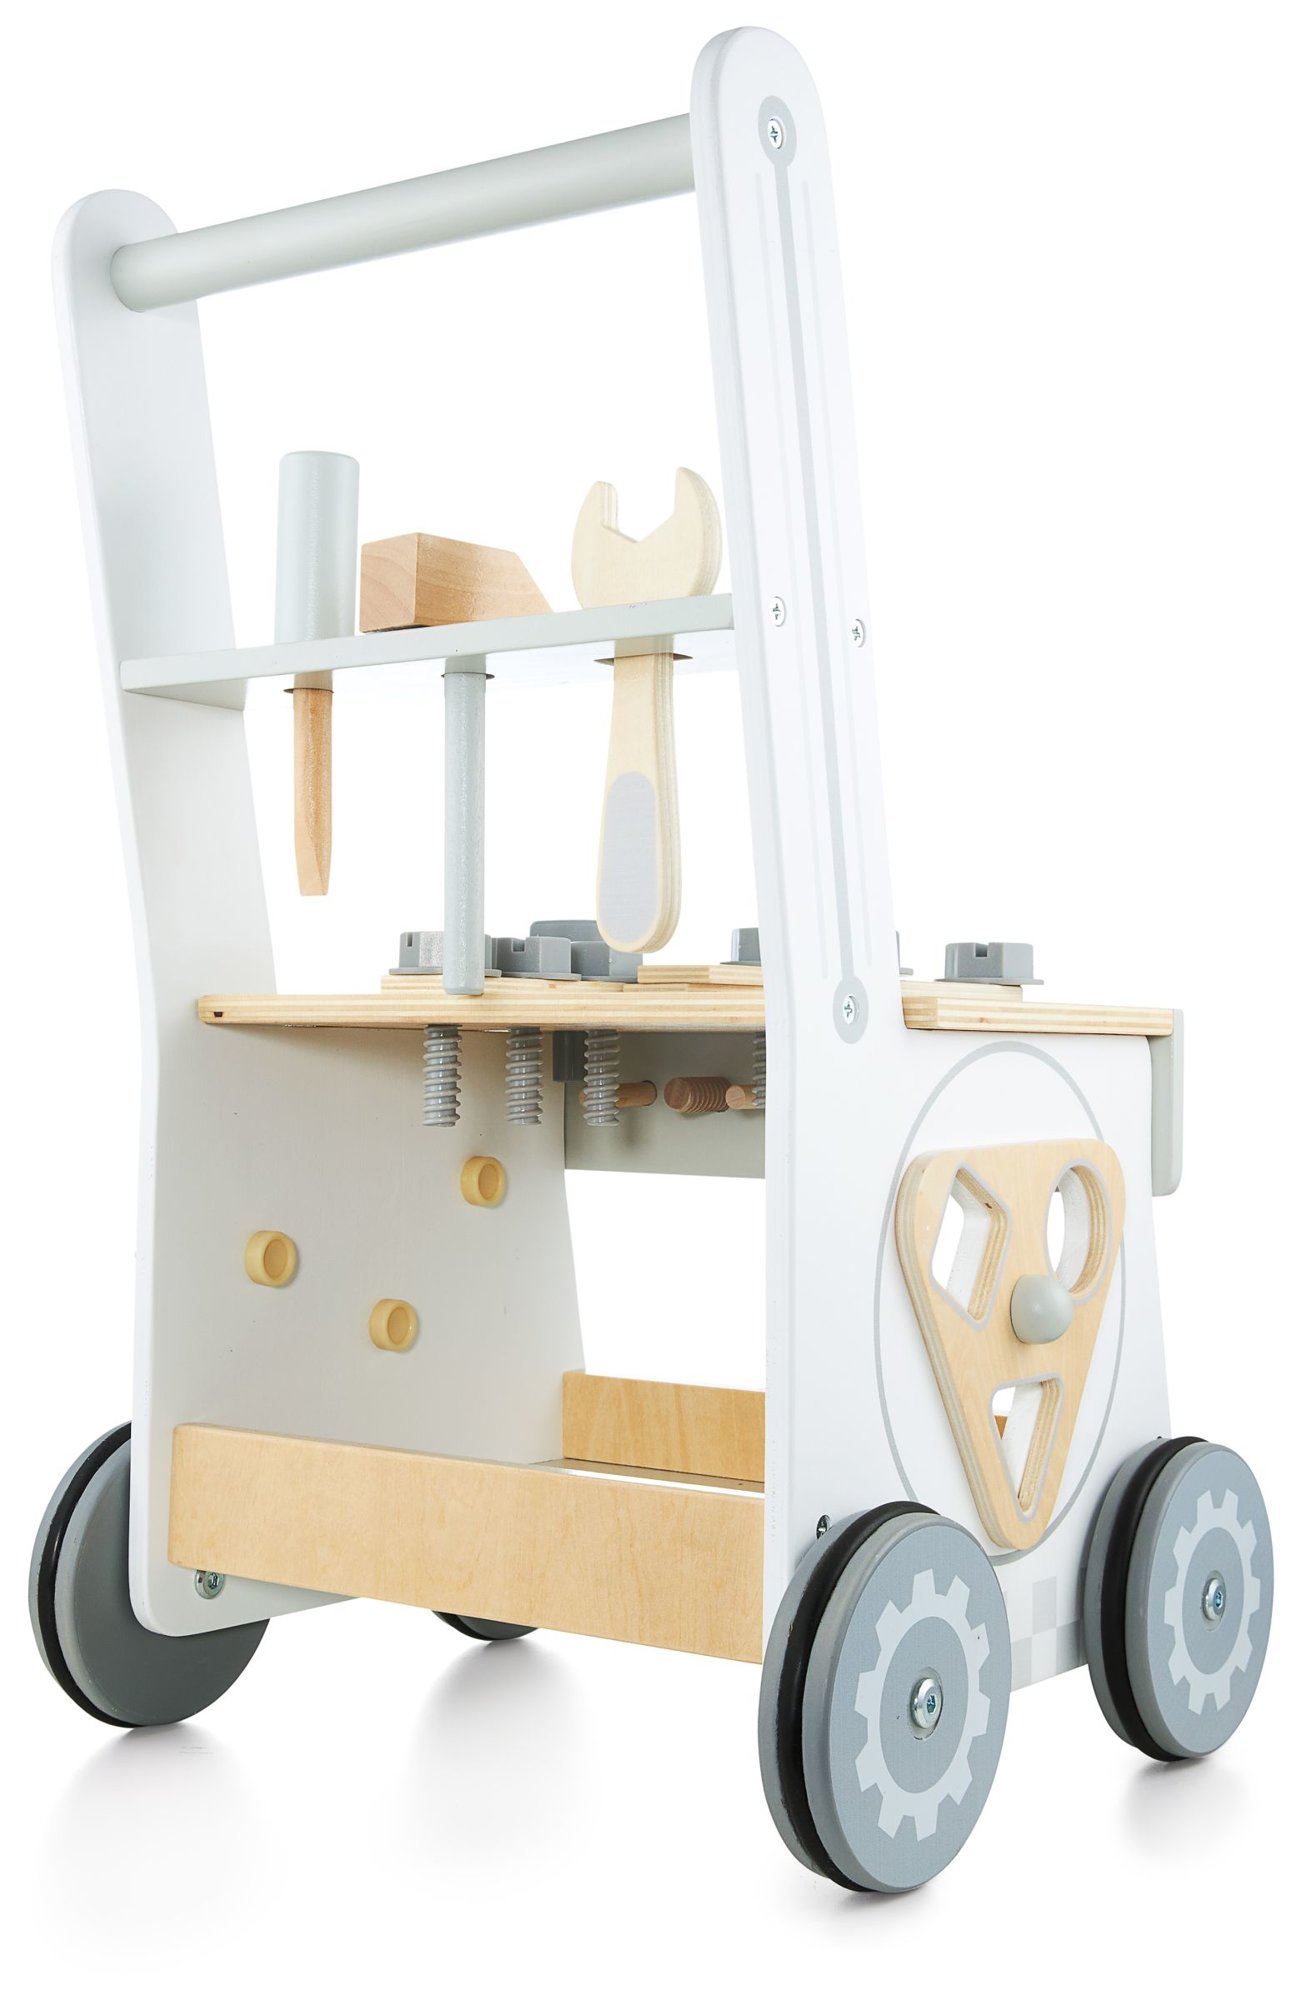 Drewniany chodzik dla dzieci 4w1, pchacz + warsztat + wózek, aż 47 elementów